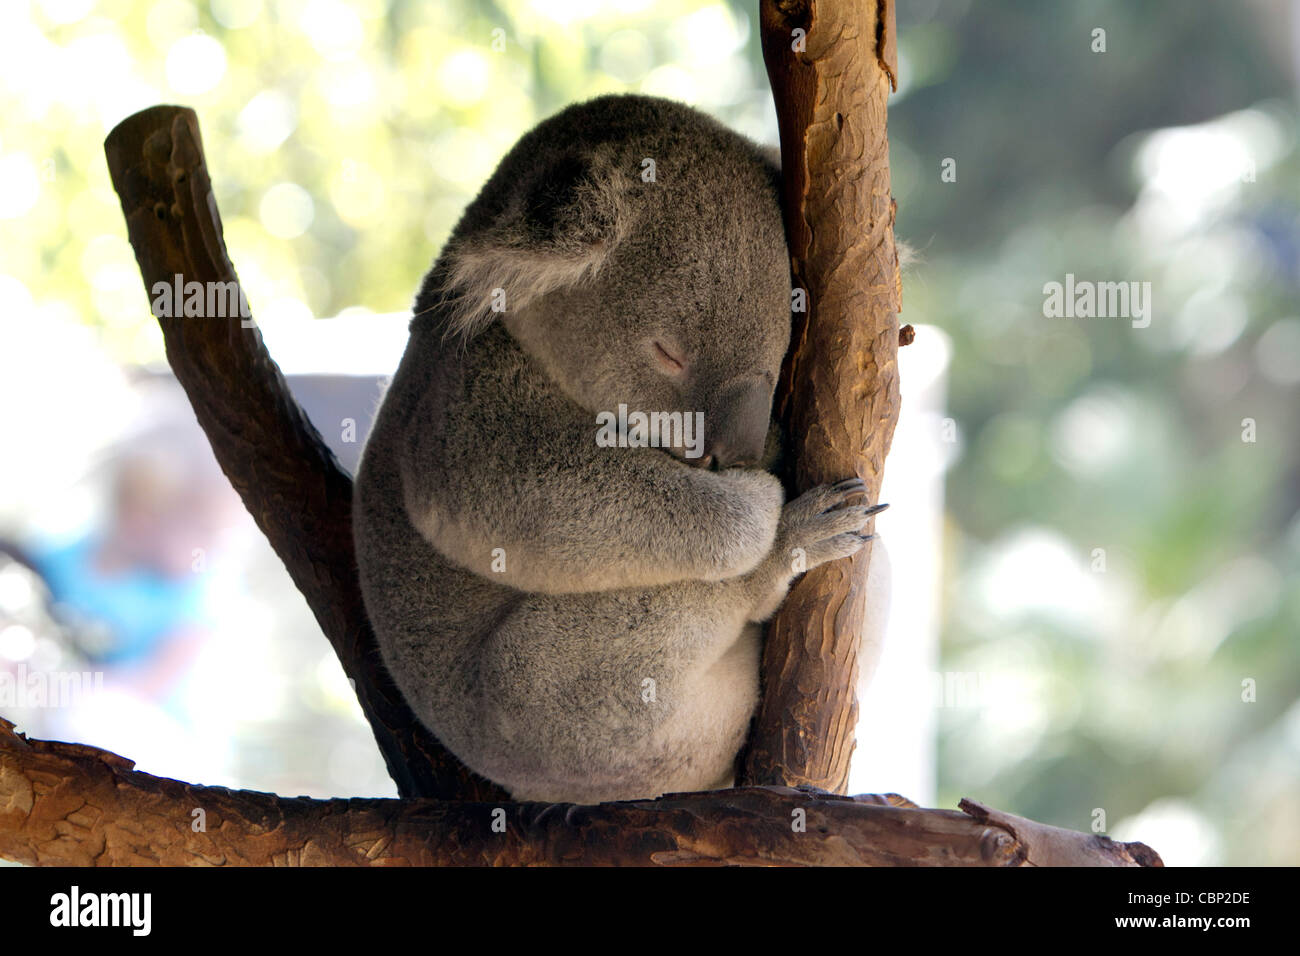 Un Koala (Phascolarctos cinereus) un herbívoro arbóreo marsupial originario de Australia. Foto de stock